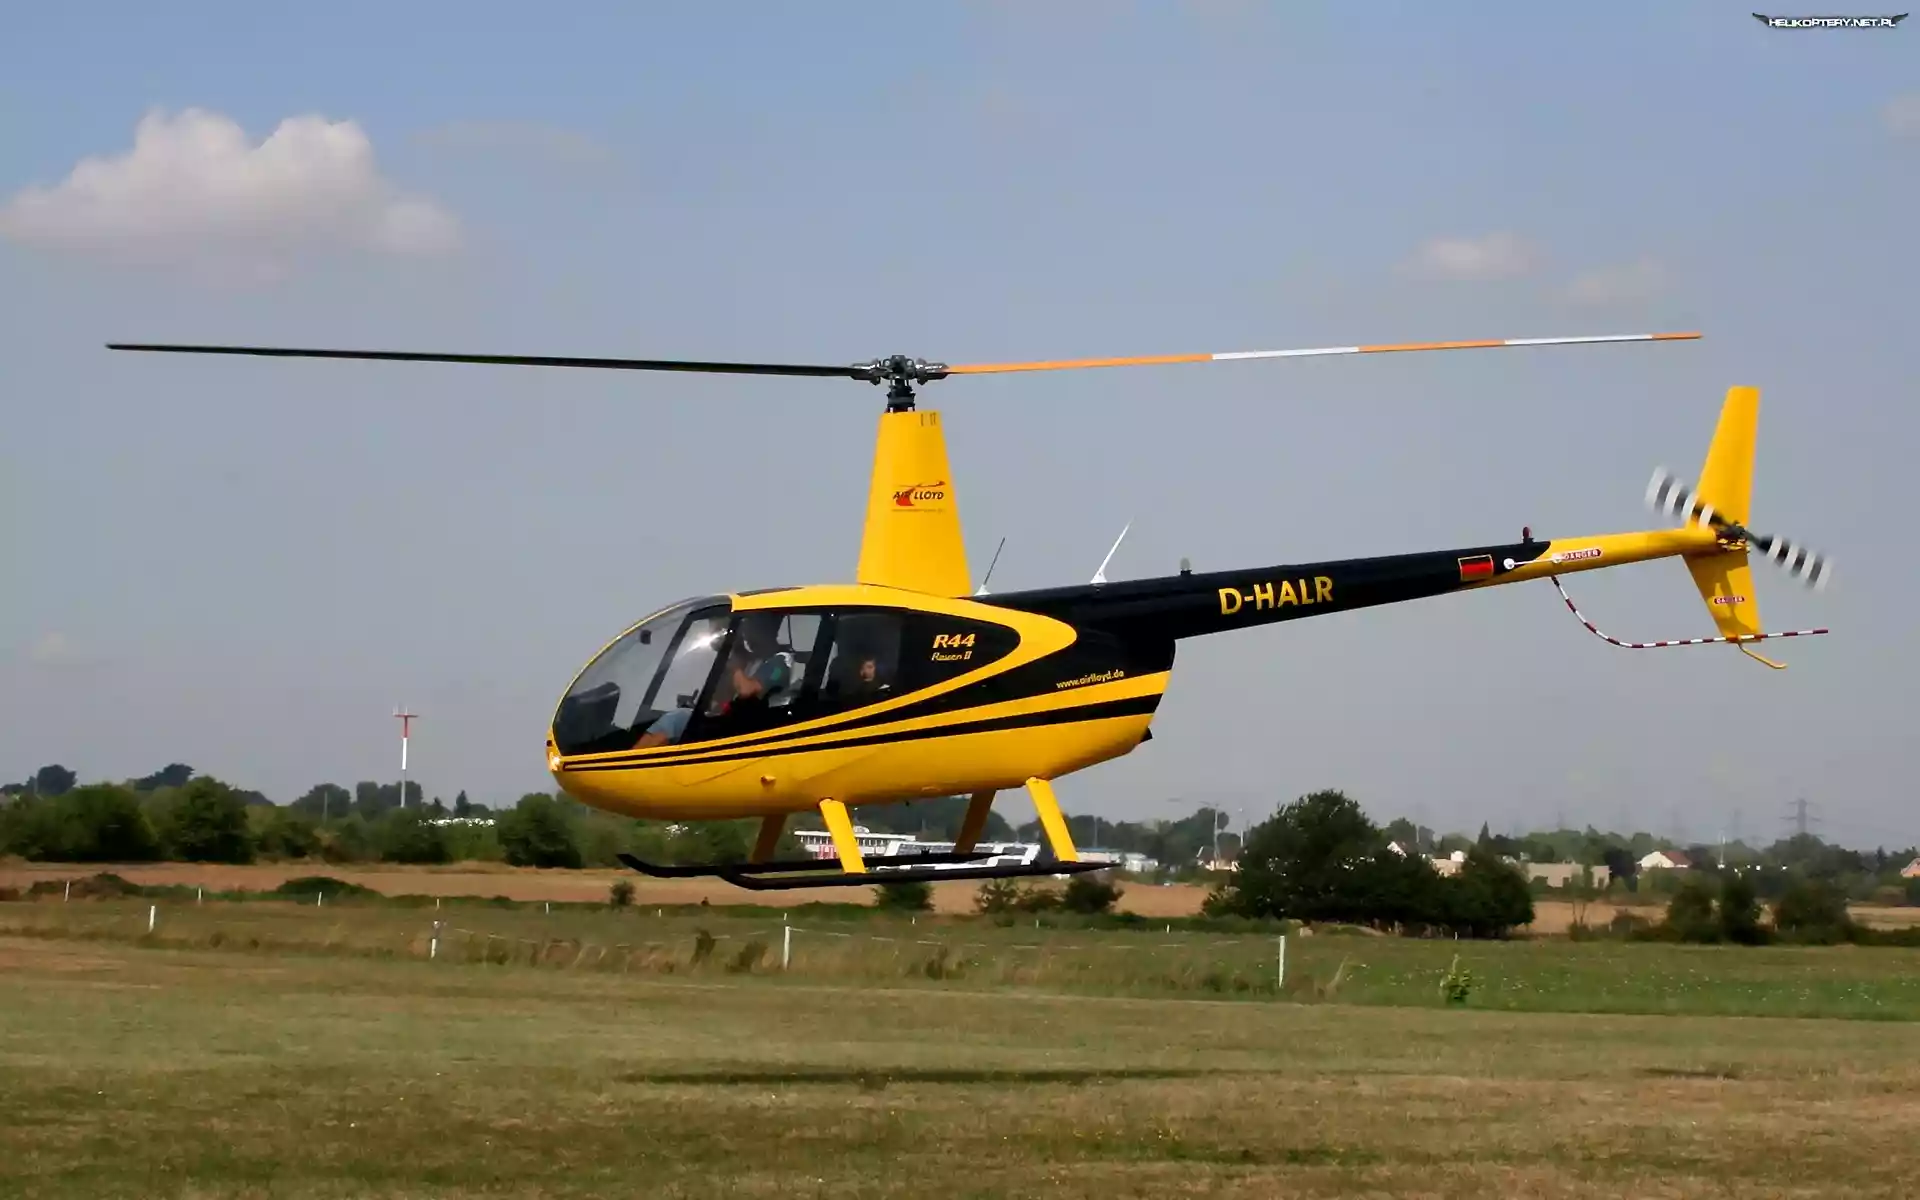 Robinson R44, Wirnik